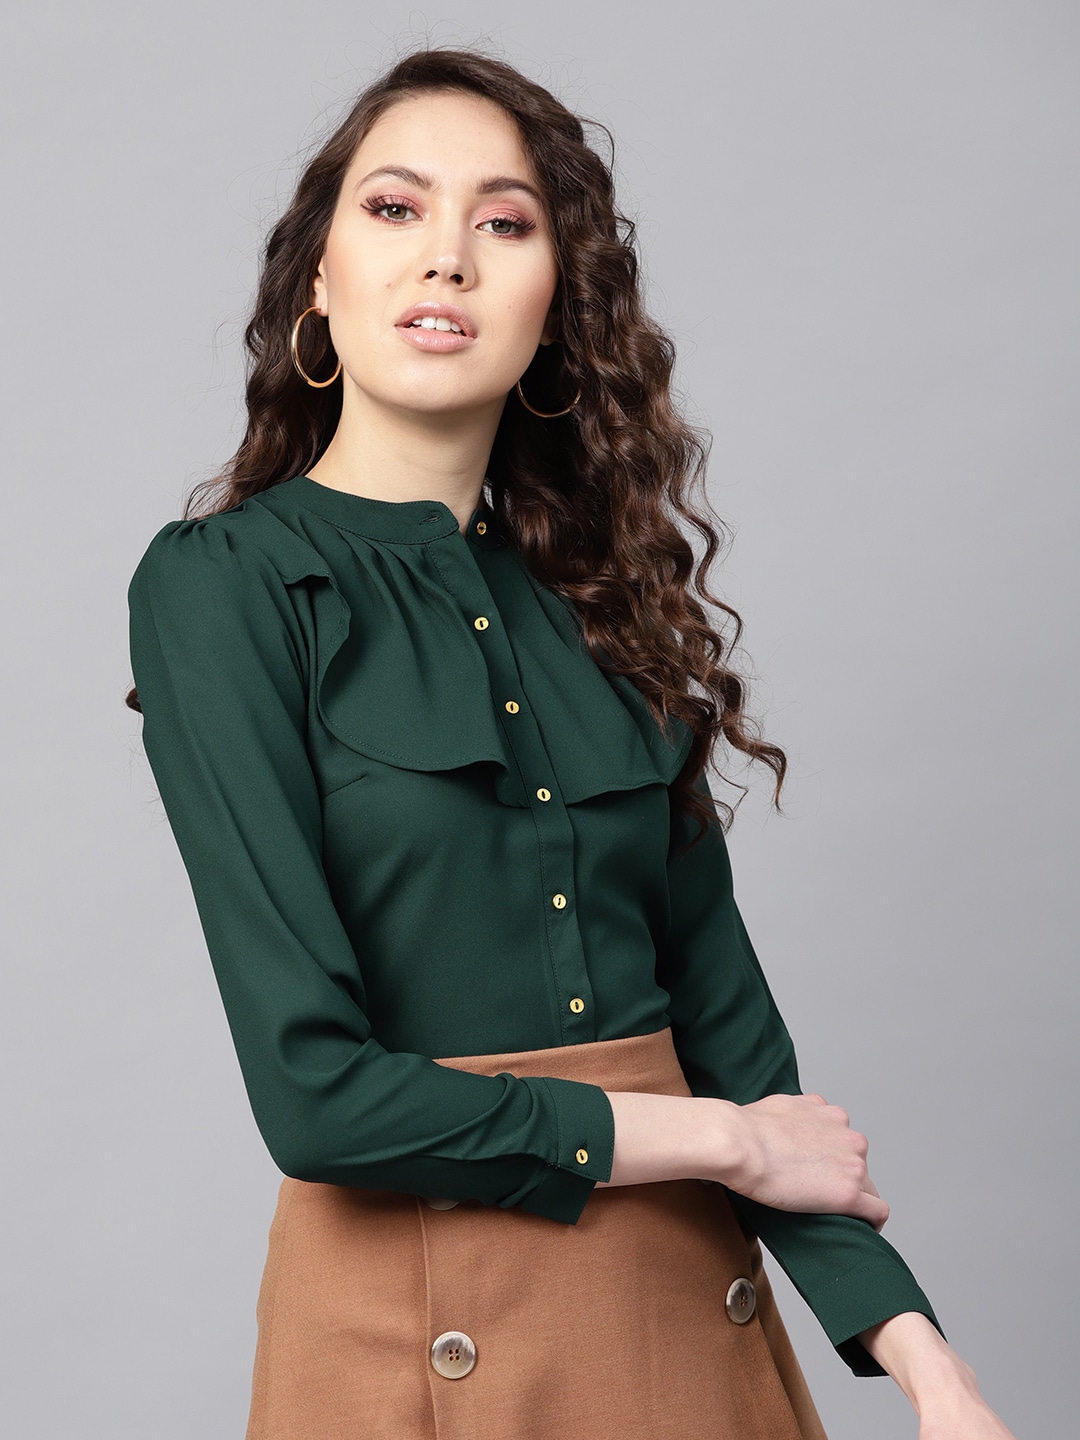 SASSAFRAS Women Green Ruffled Shirt Style Top